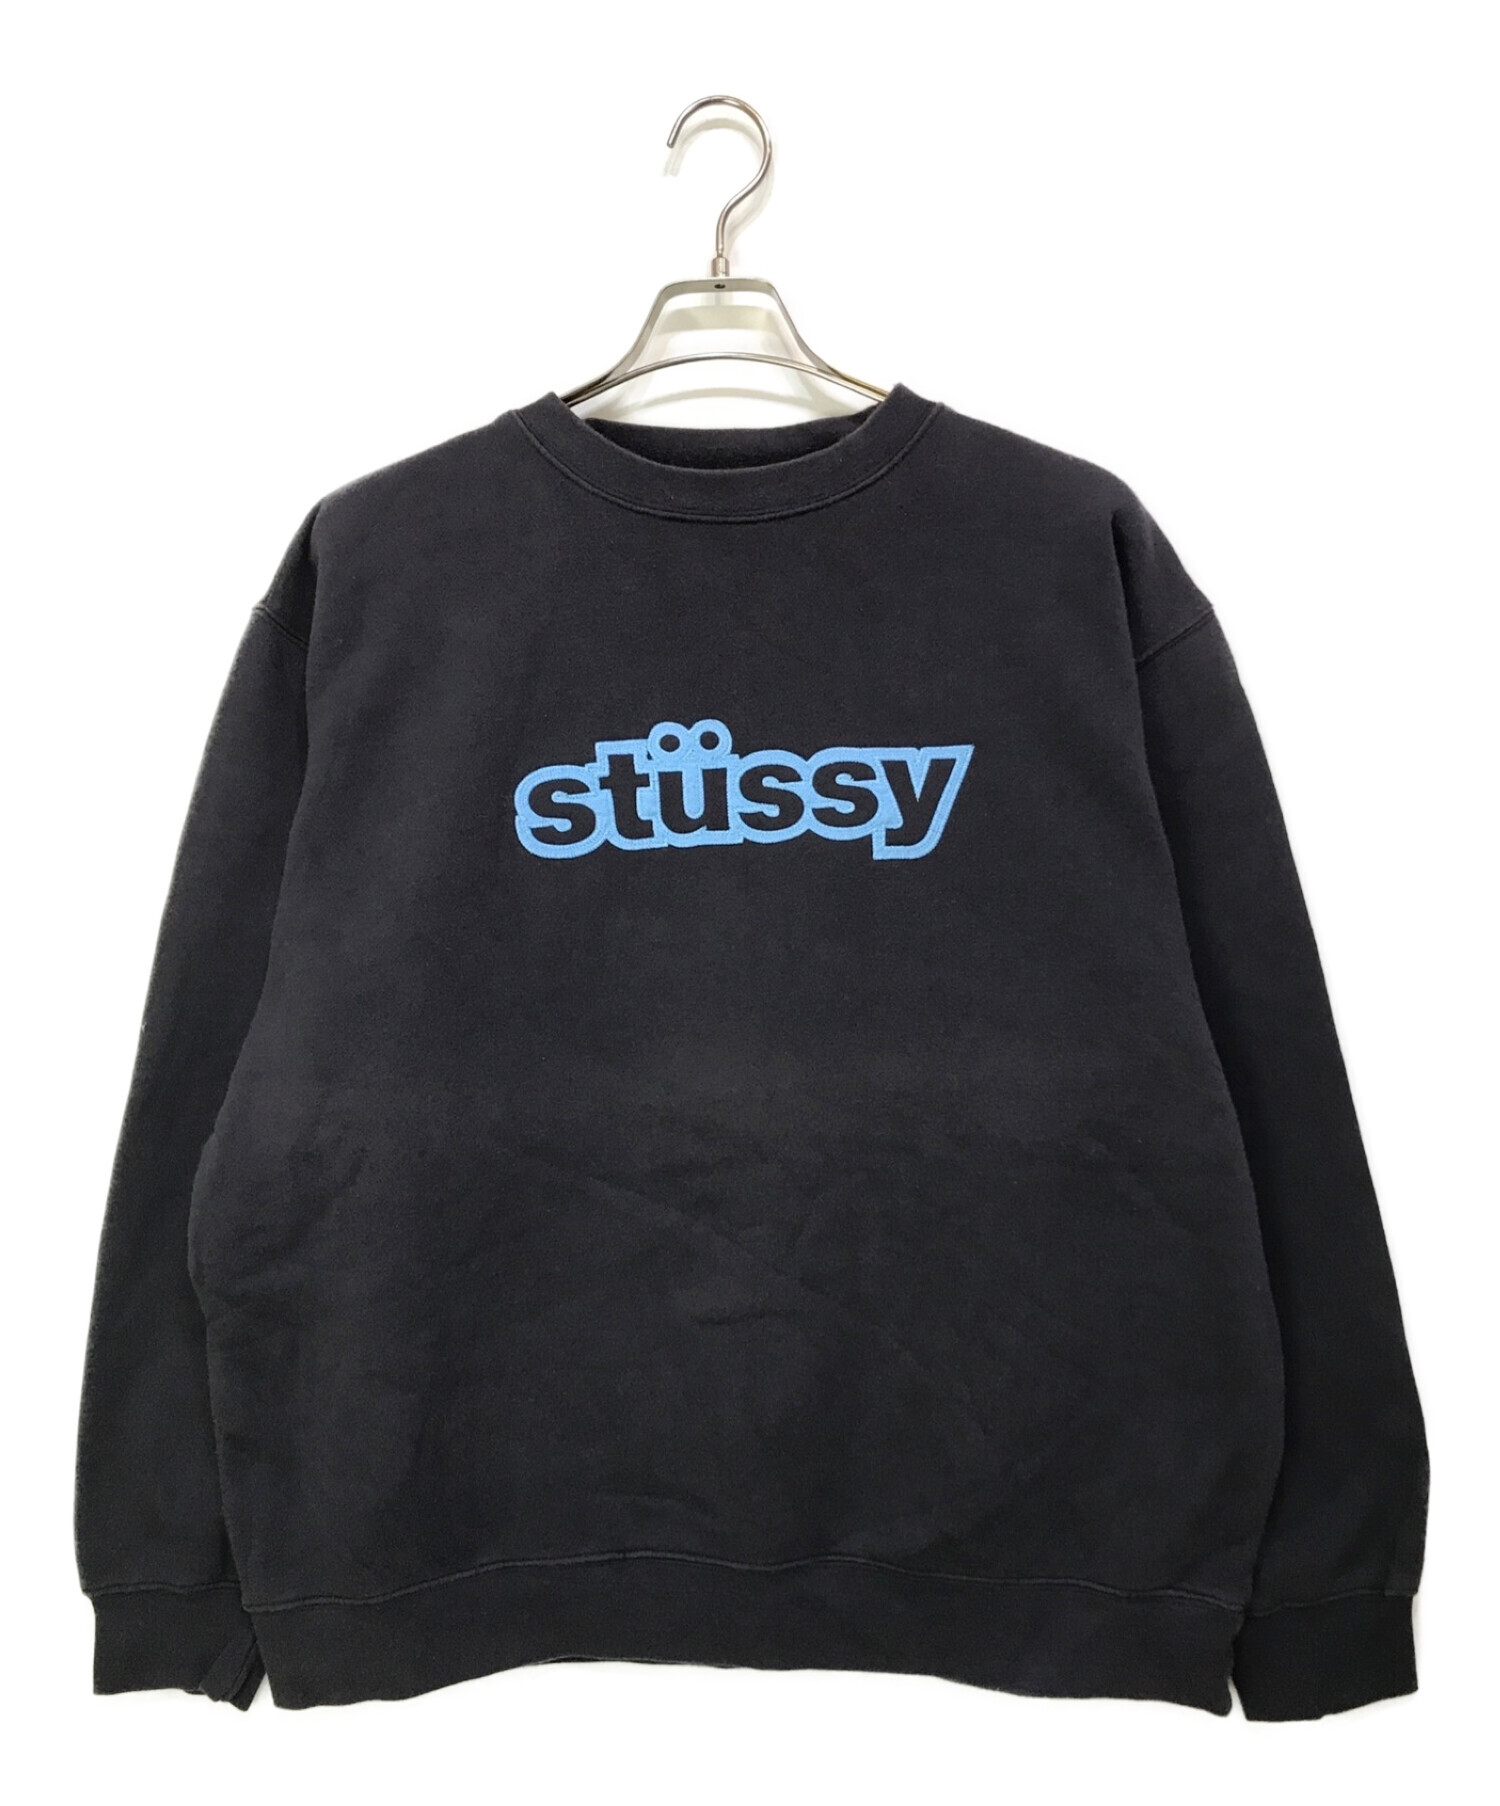 stussy (ステューシー) ロゴスウェット ブラック サイズ:L